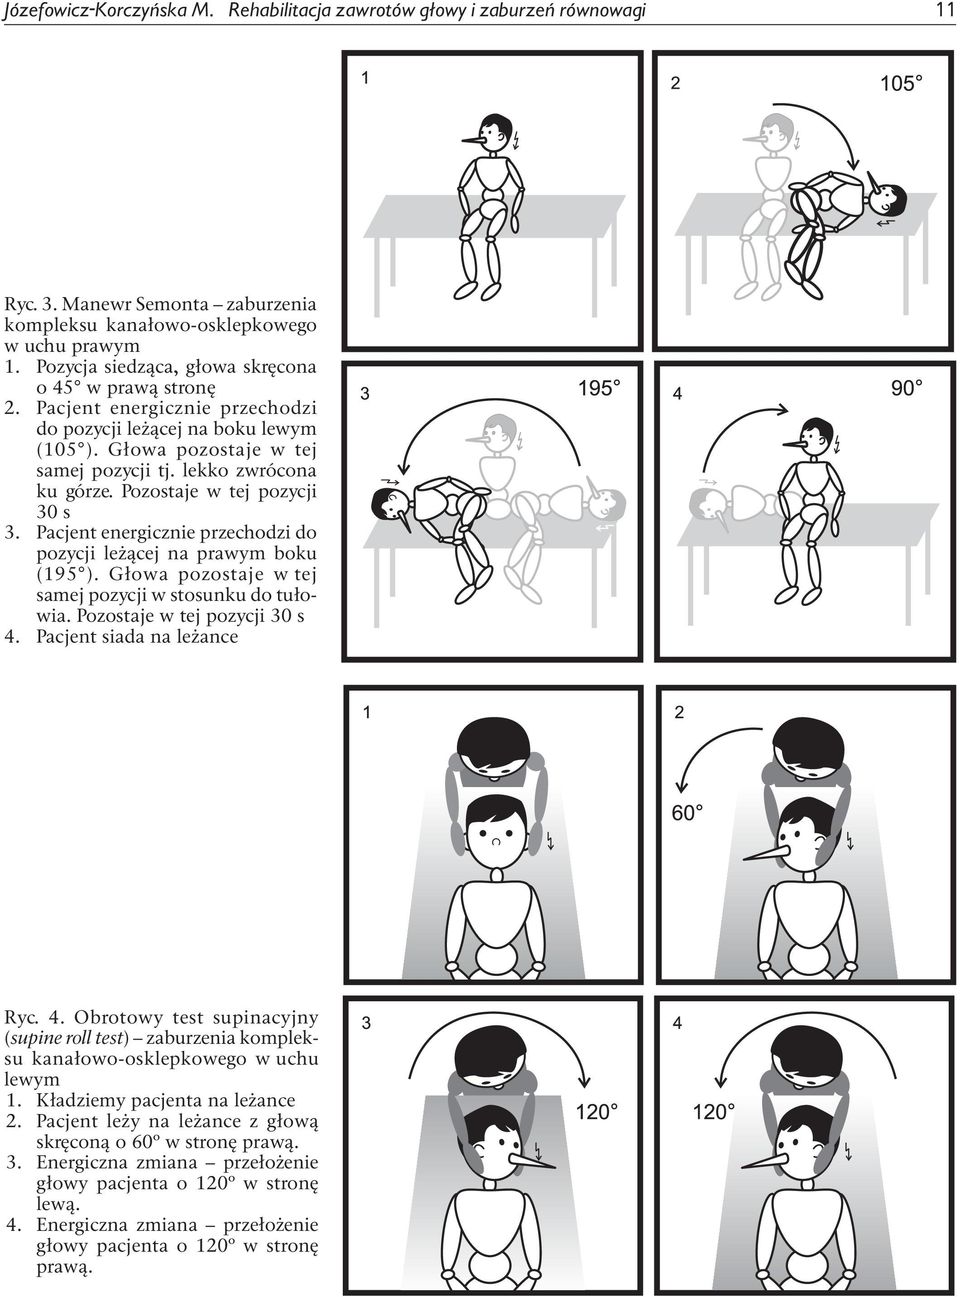 Rehabilitacja zawrotów głowy i zaburzeń równowagi - PDF Free Download